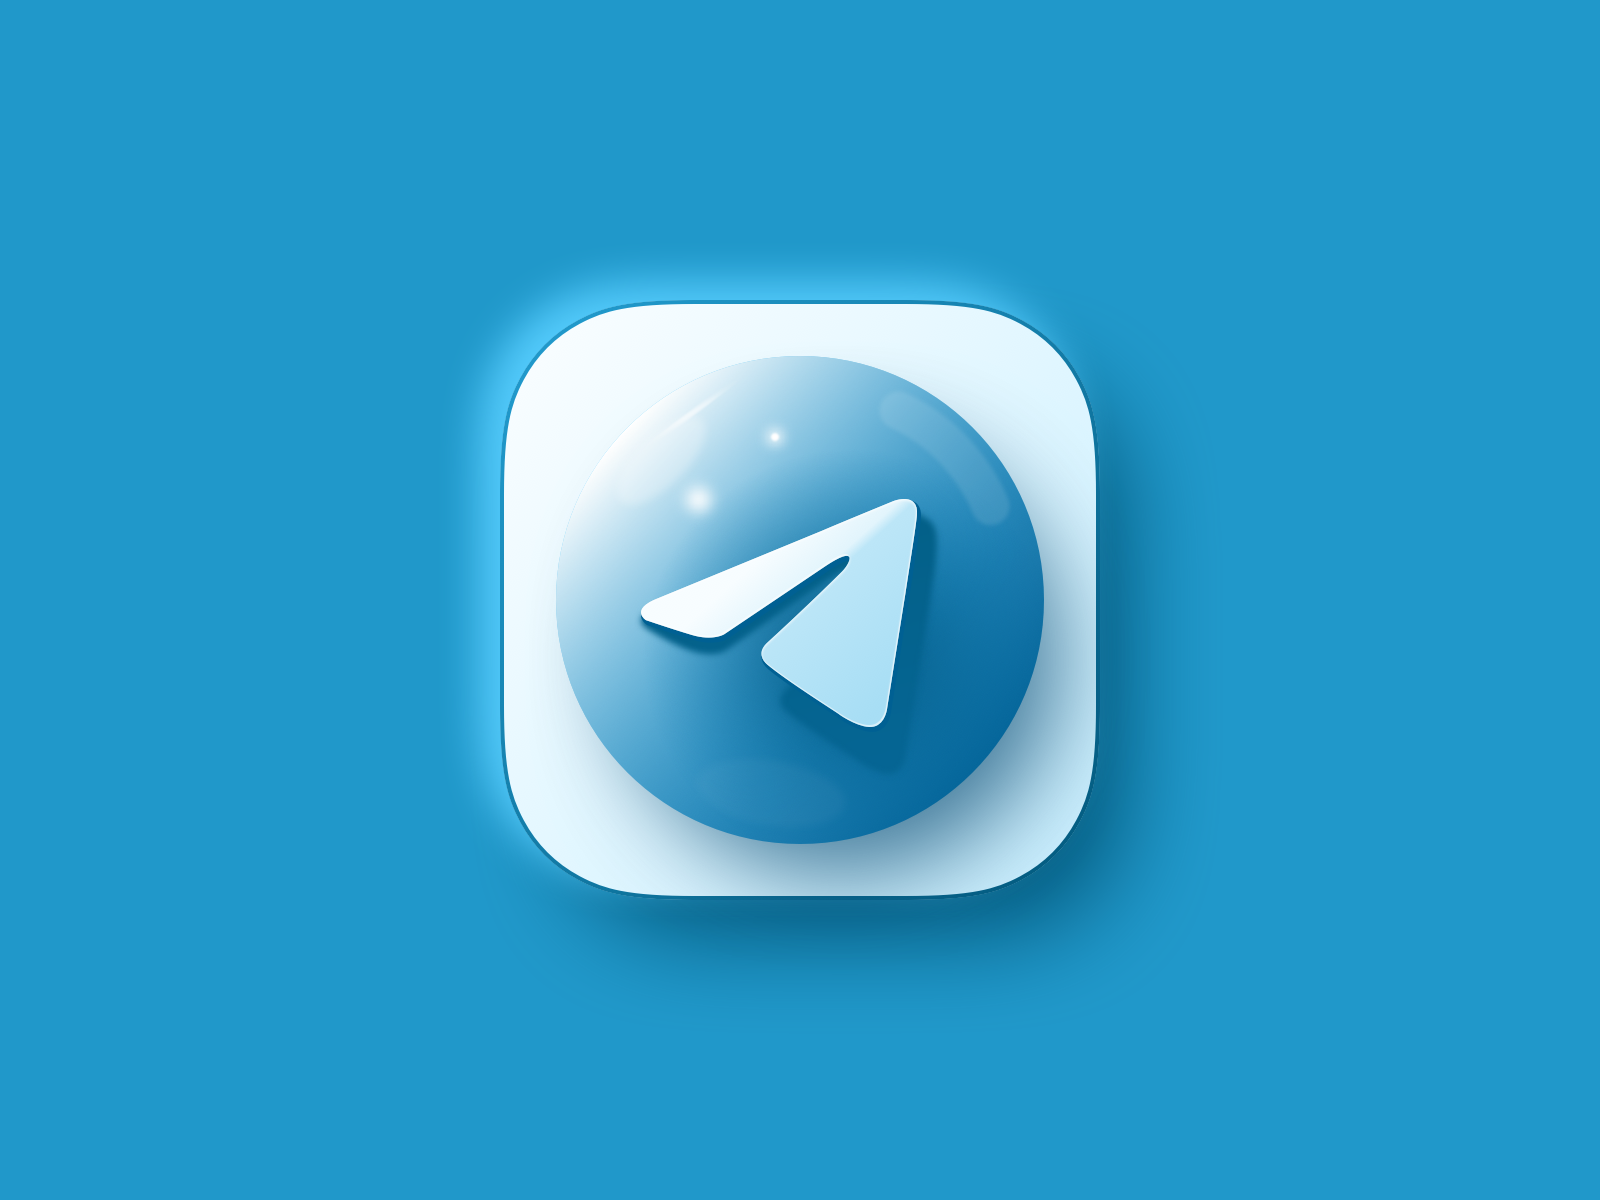 Web3 telegram. Телеграмм лого. Иконка Telegram. Телеграм значок 3d. Красивая иконка телеграм.